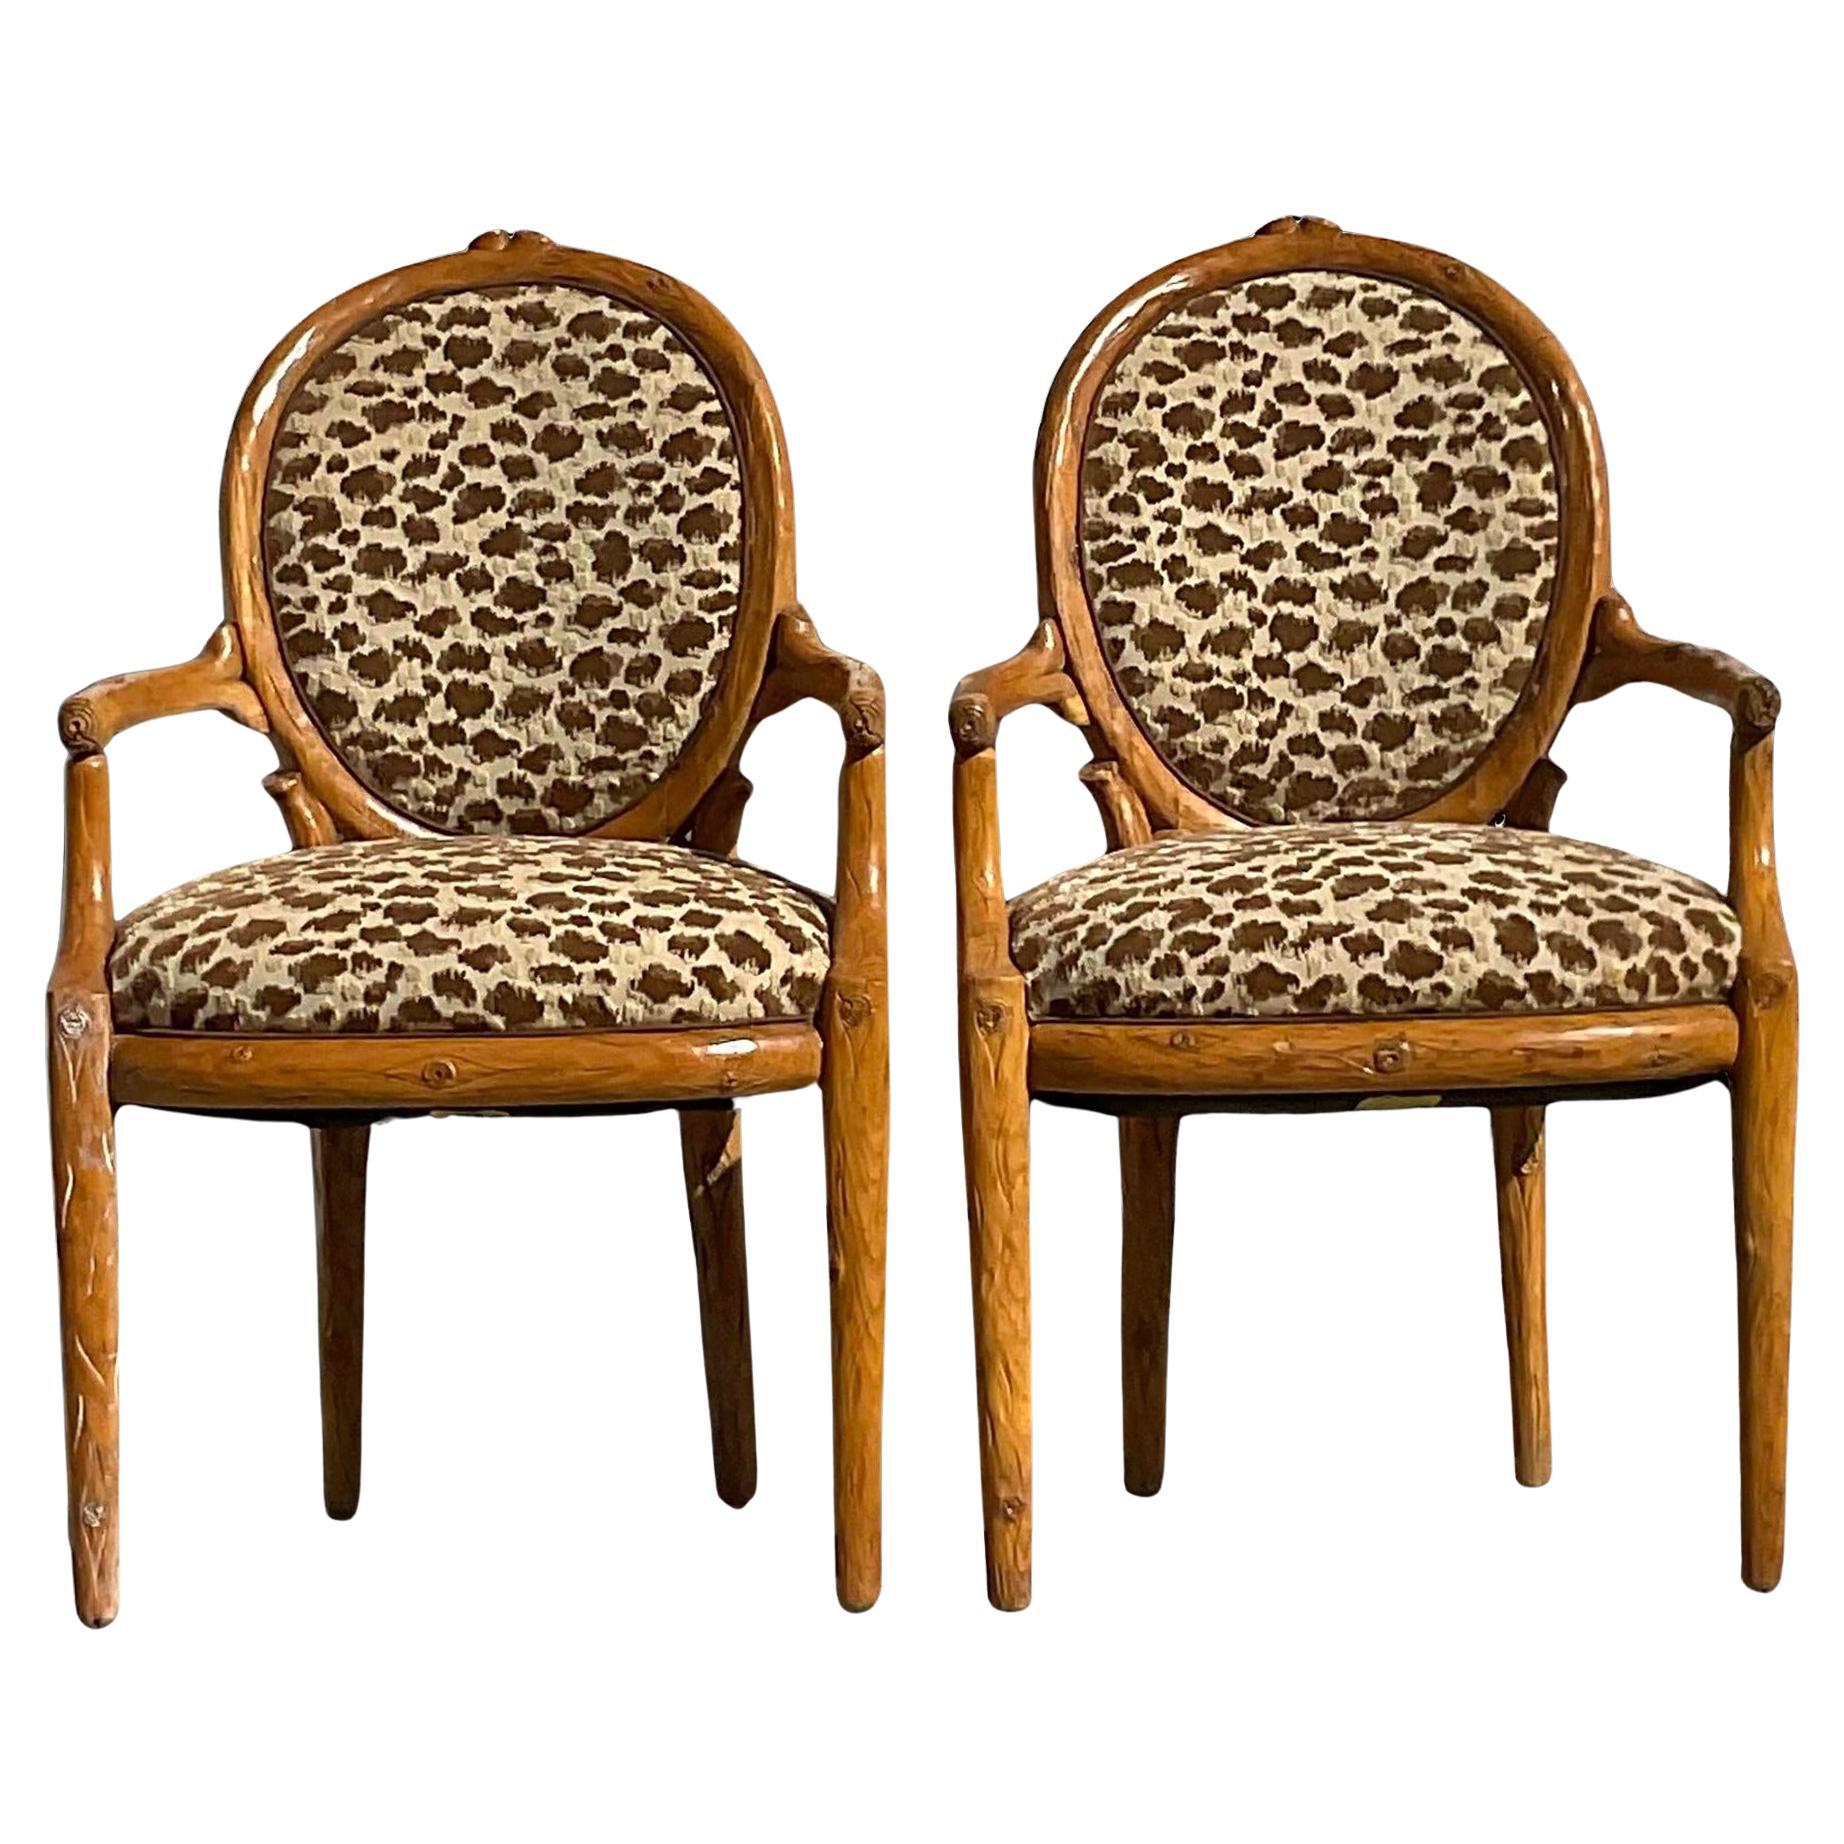 Vintage Boho geschnitzte Faux Bois-Sessel im Vintage-Stil - ein Paar